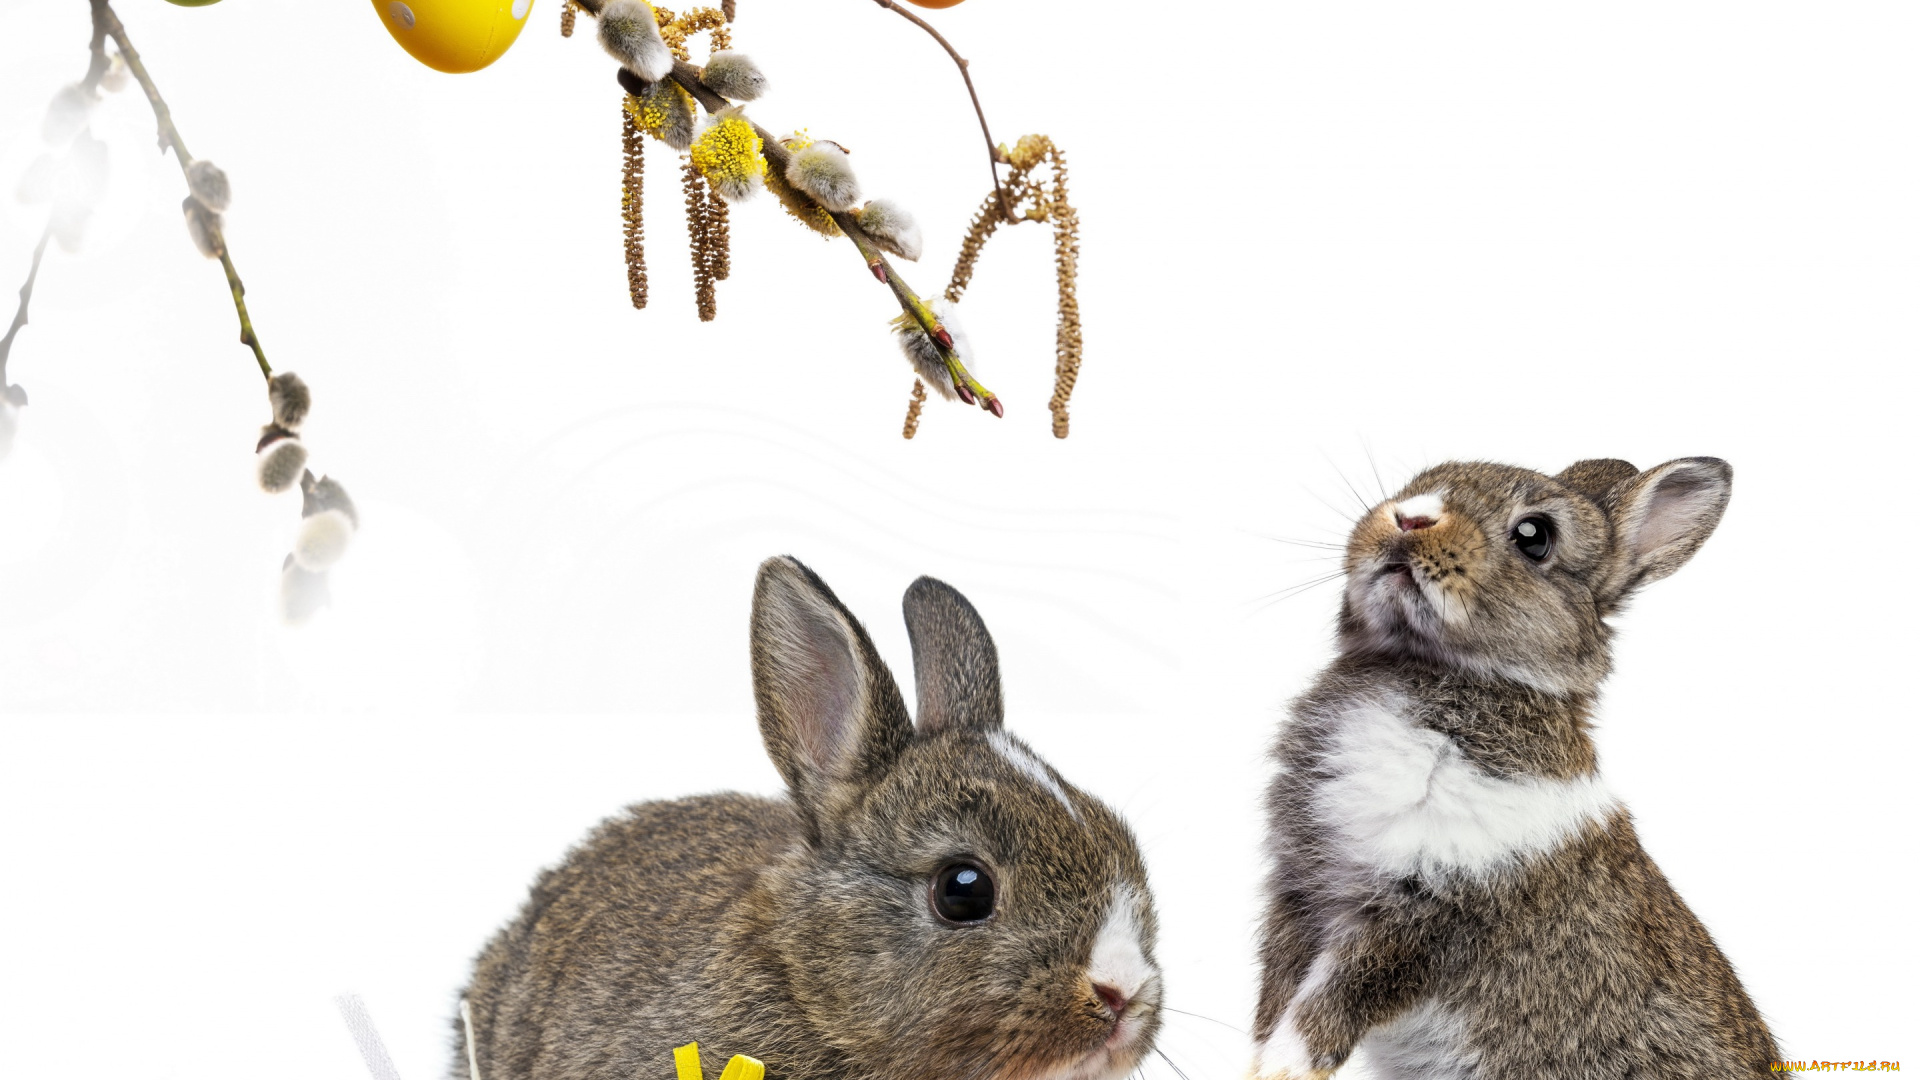 животные, кролики, , зайцы, colorful, пасхальный, willow, twig, easter, корзина, верба, flowers, eggs, decoration, bunny, пасха, цветы, крашеные, яйца, rabbit, весна, spring, ветки